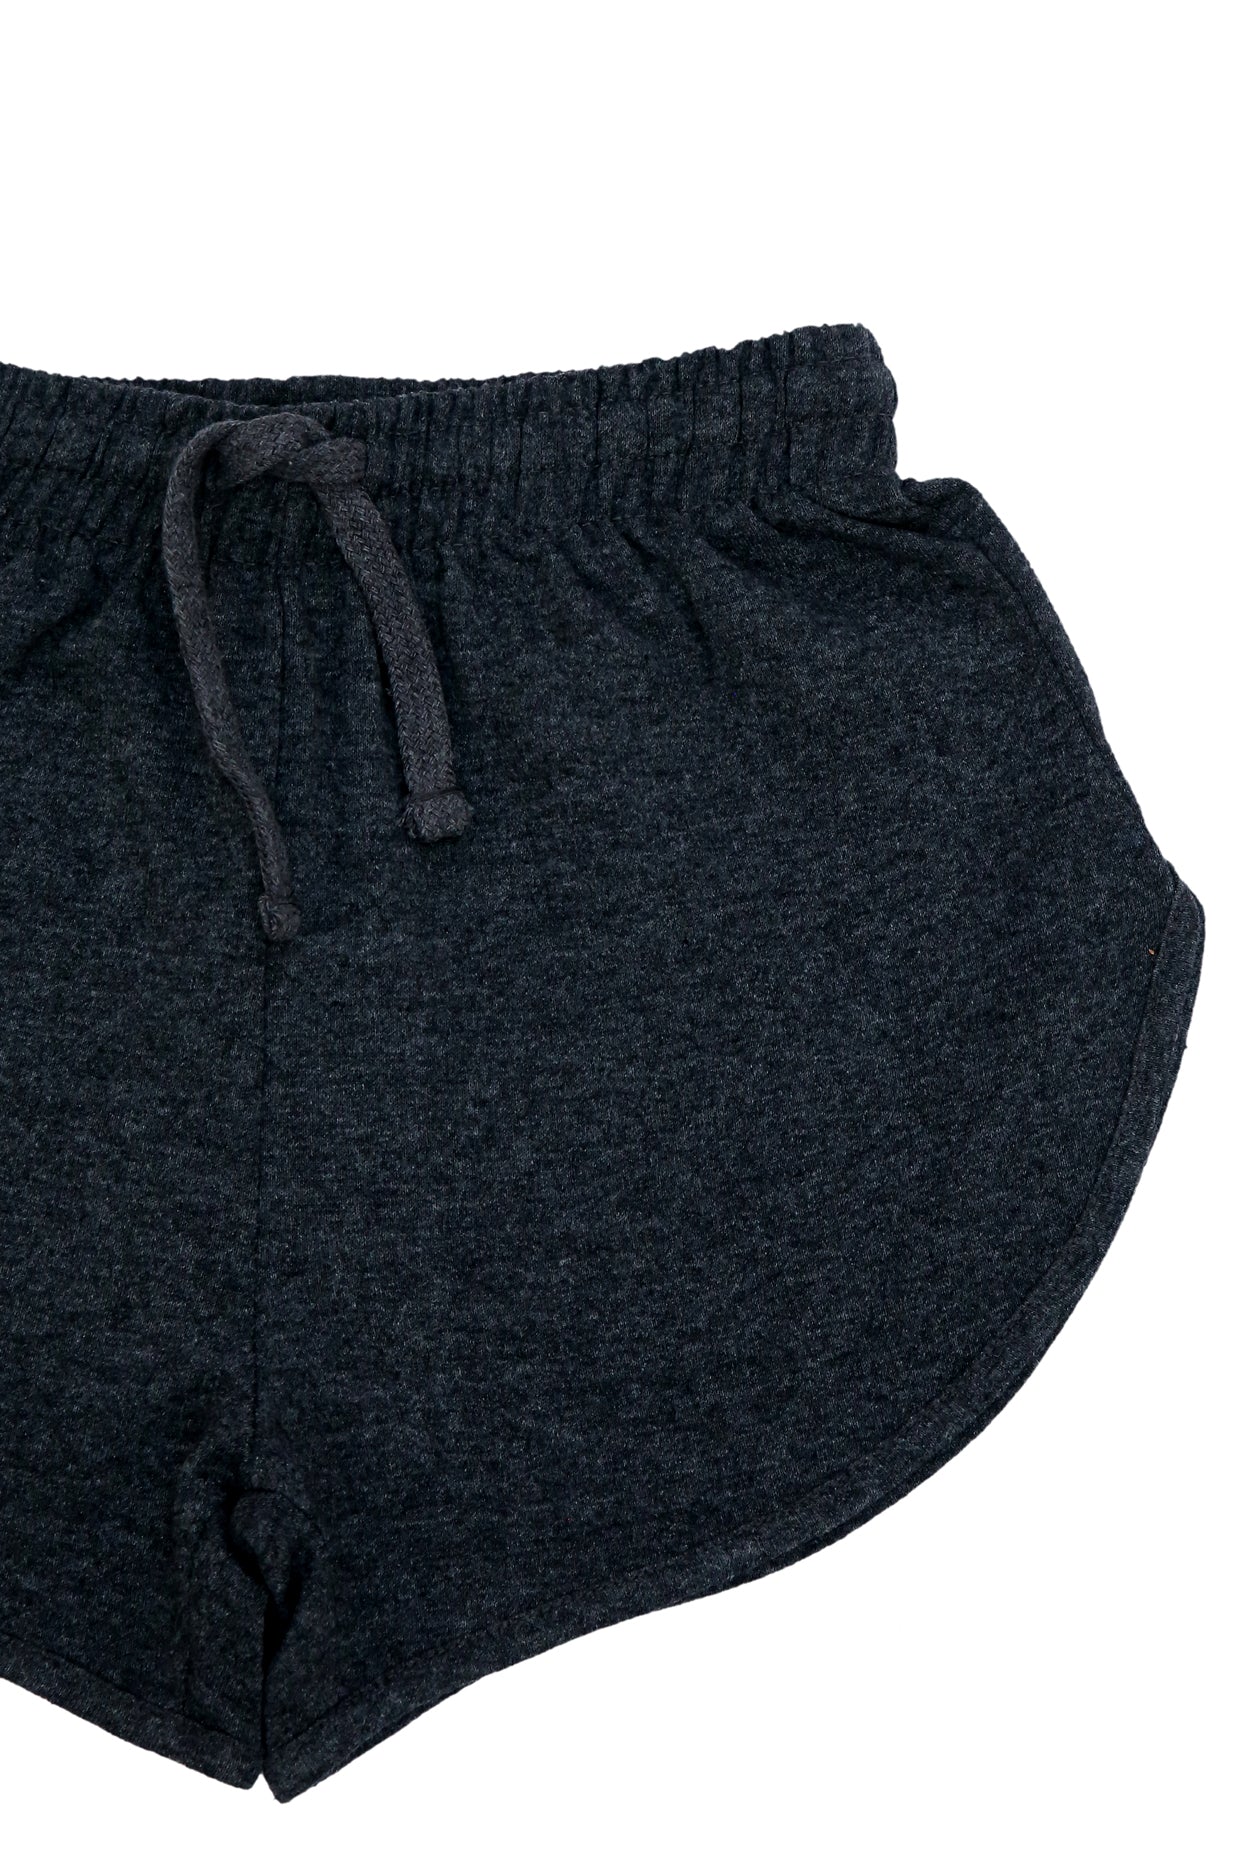 Women Shorts (Charcoal)